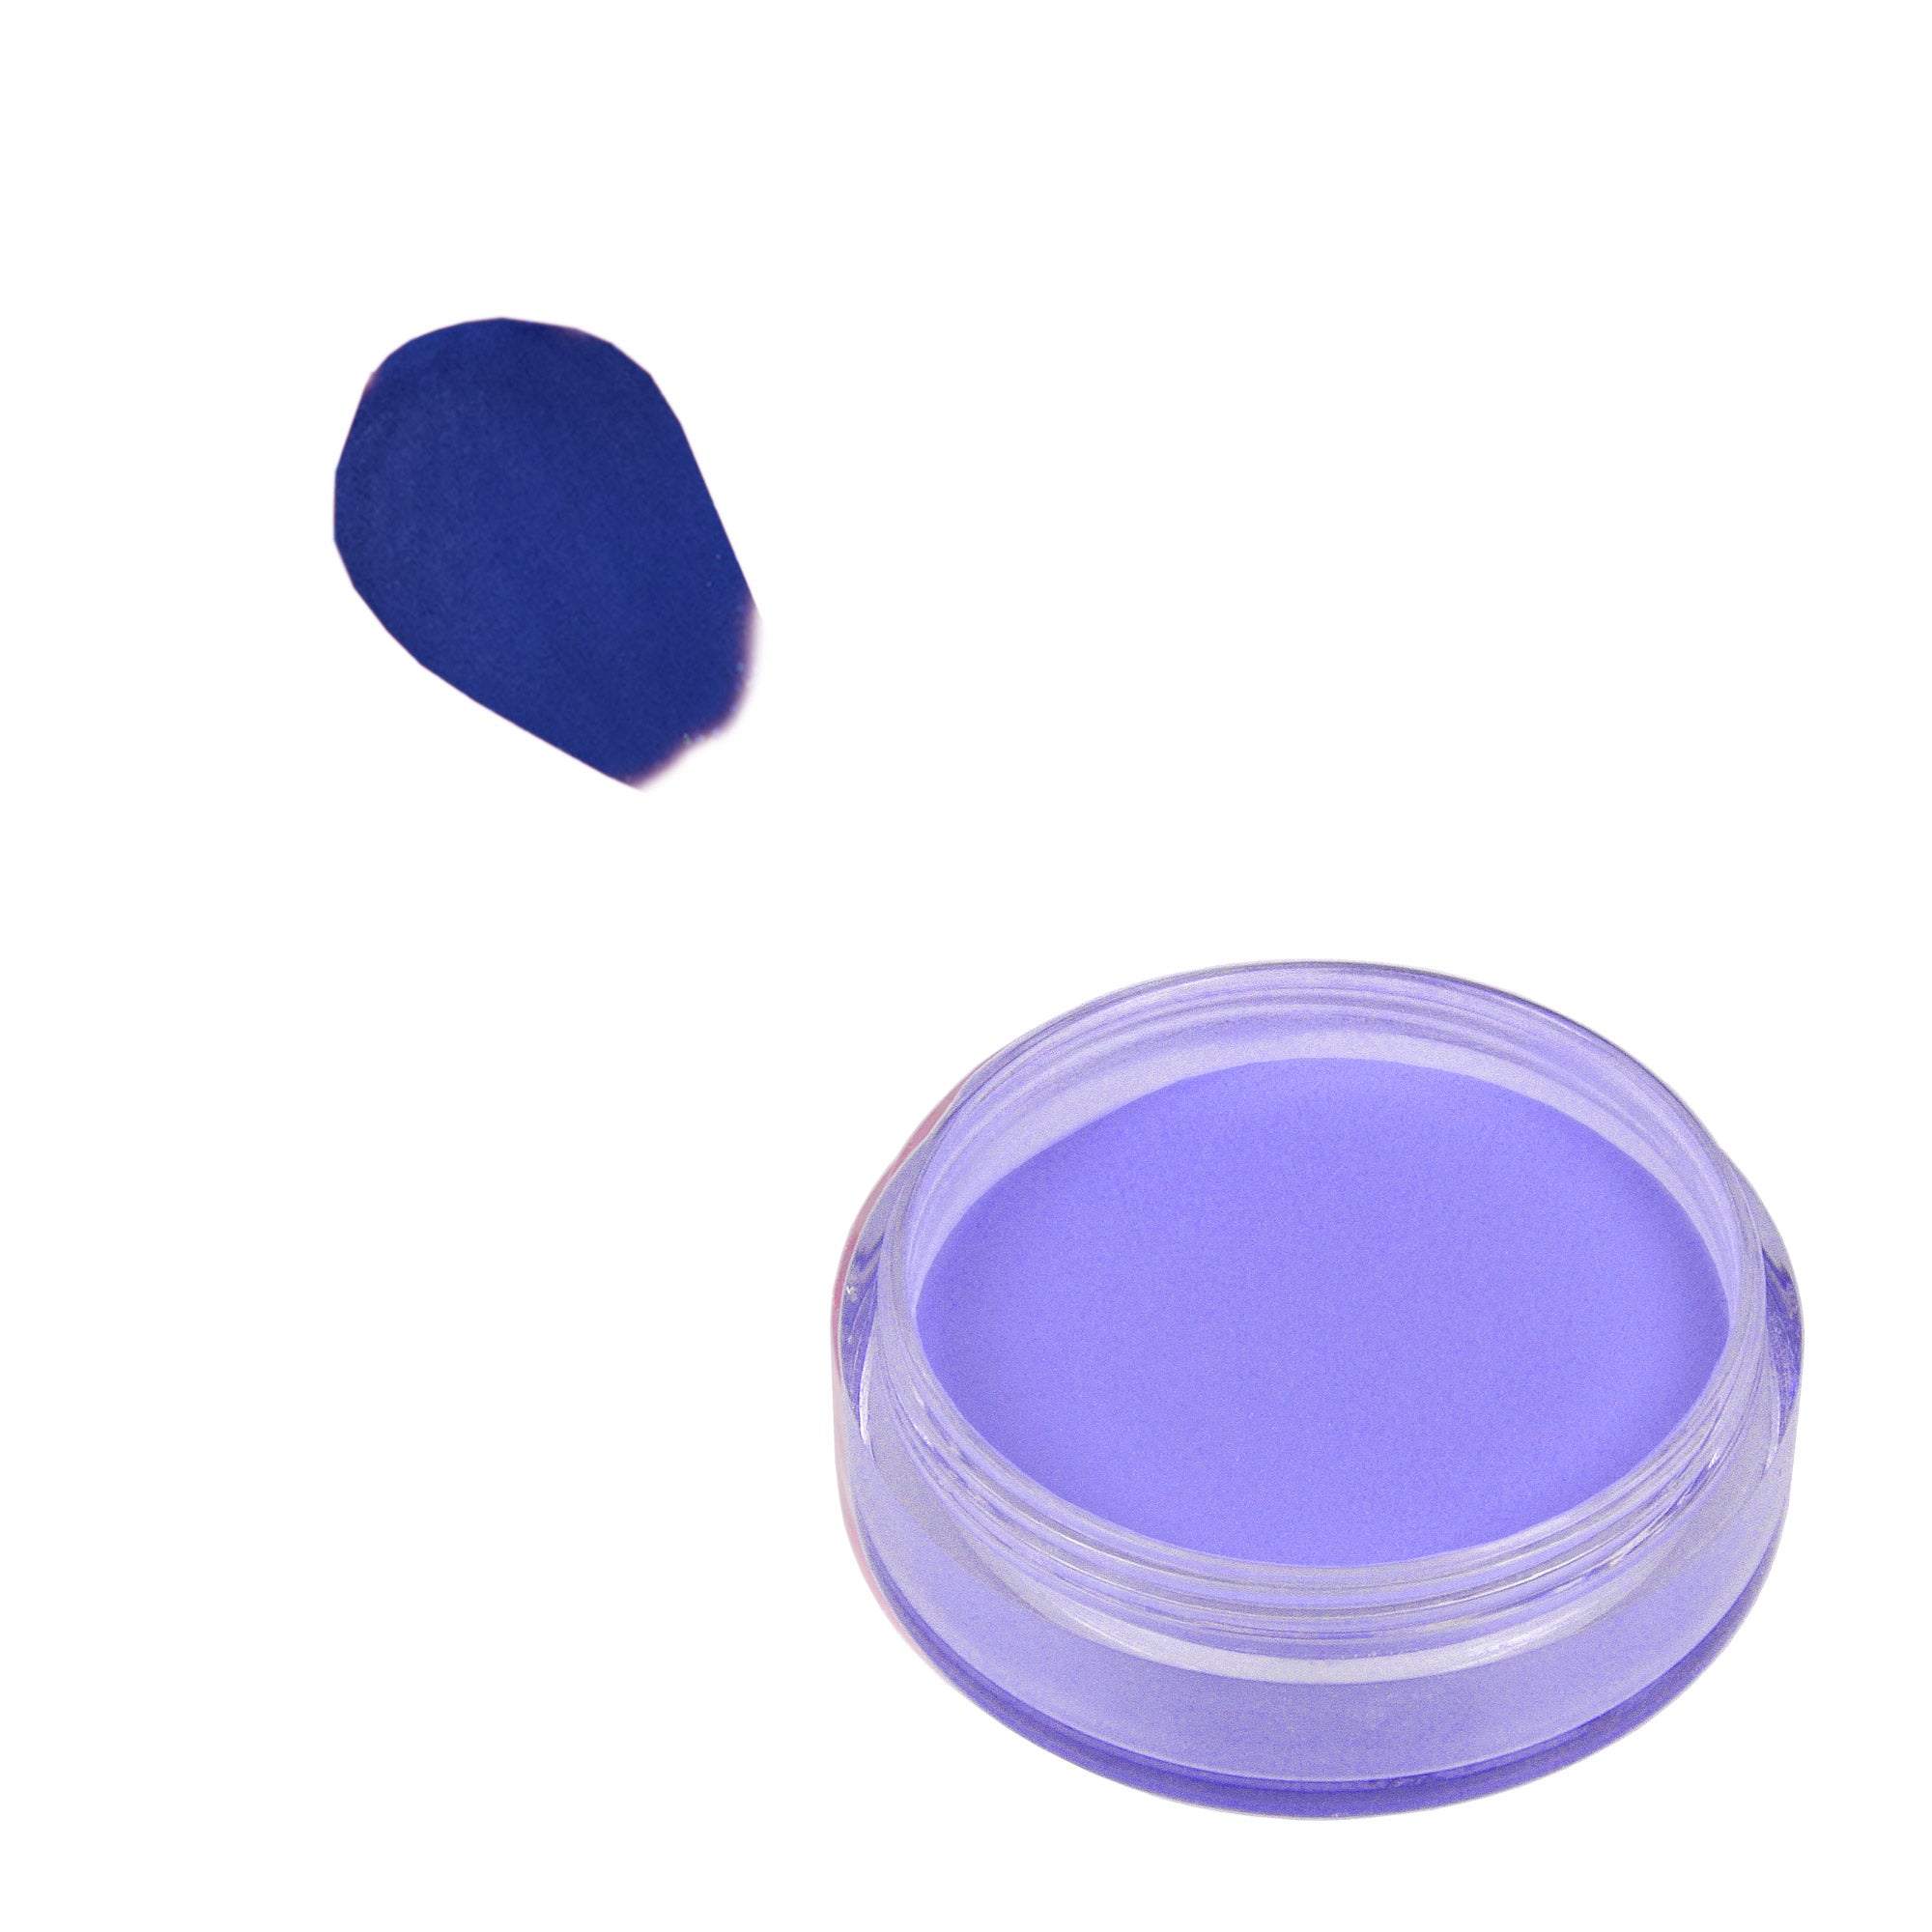 Acrylic Powder 10 g - Dark Purple Blue